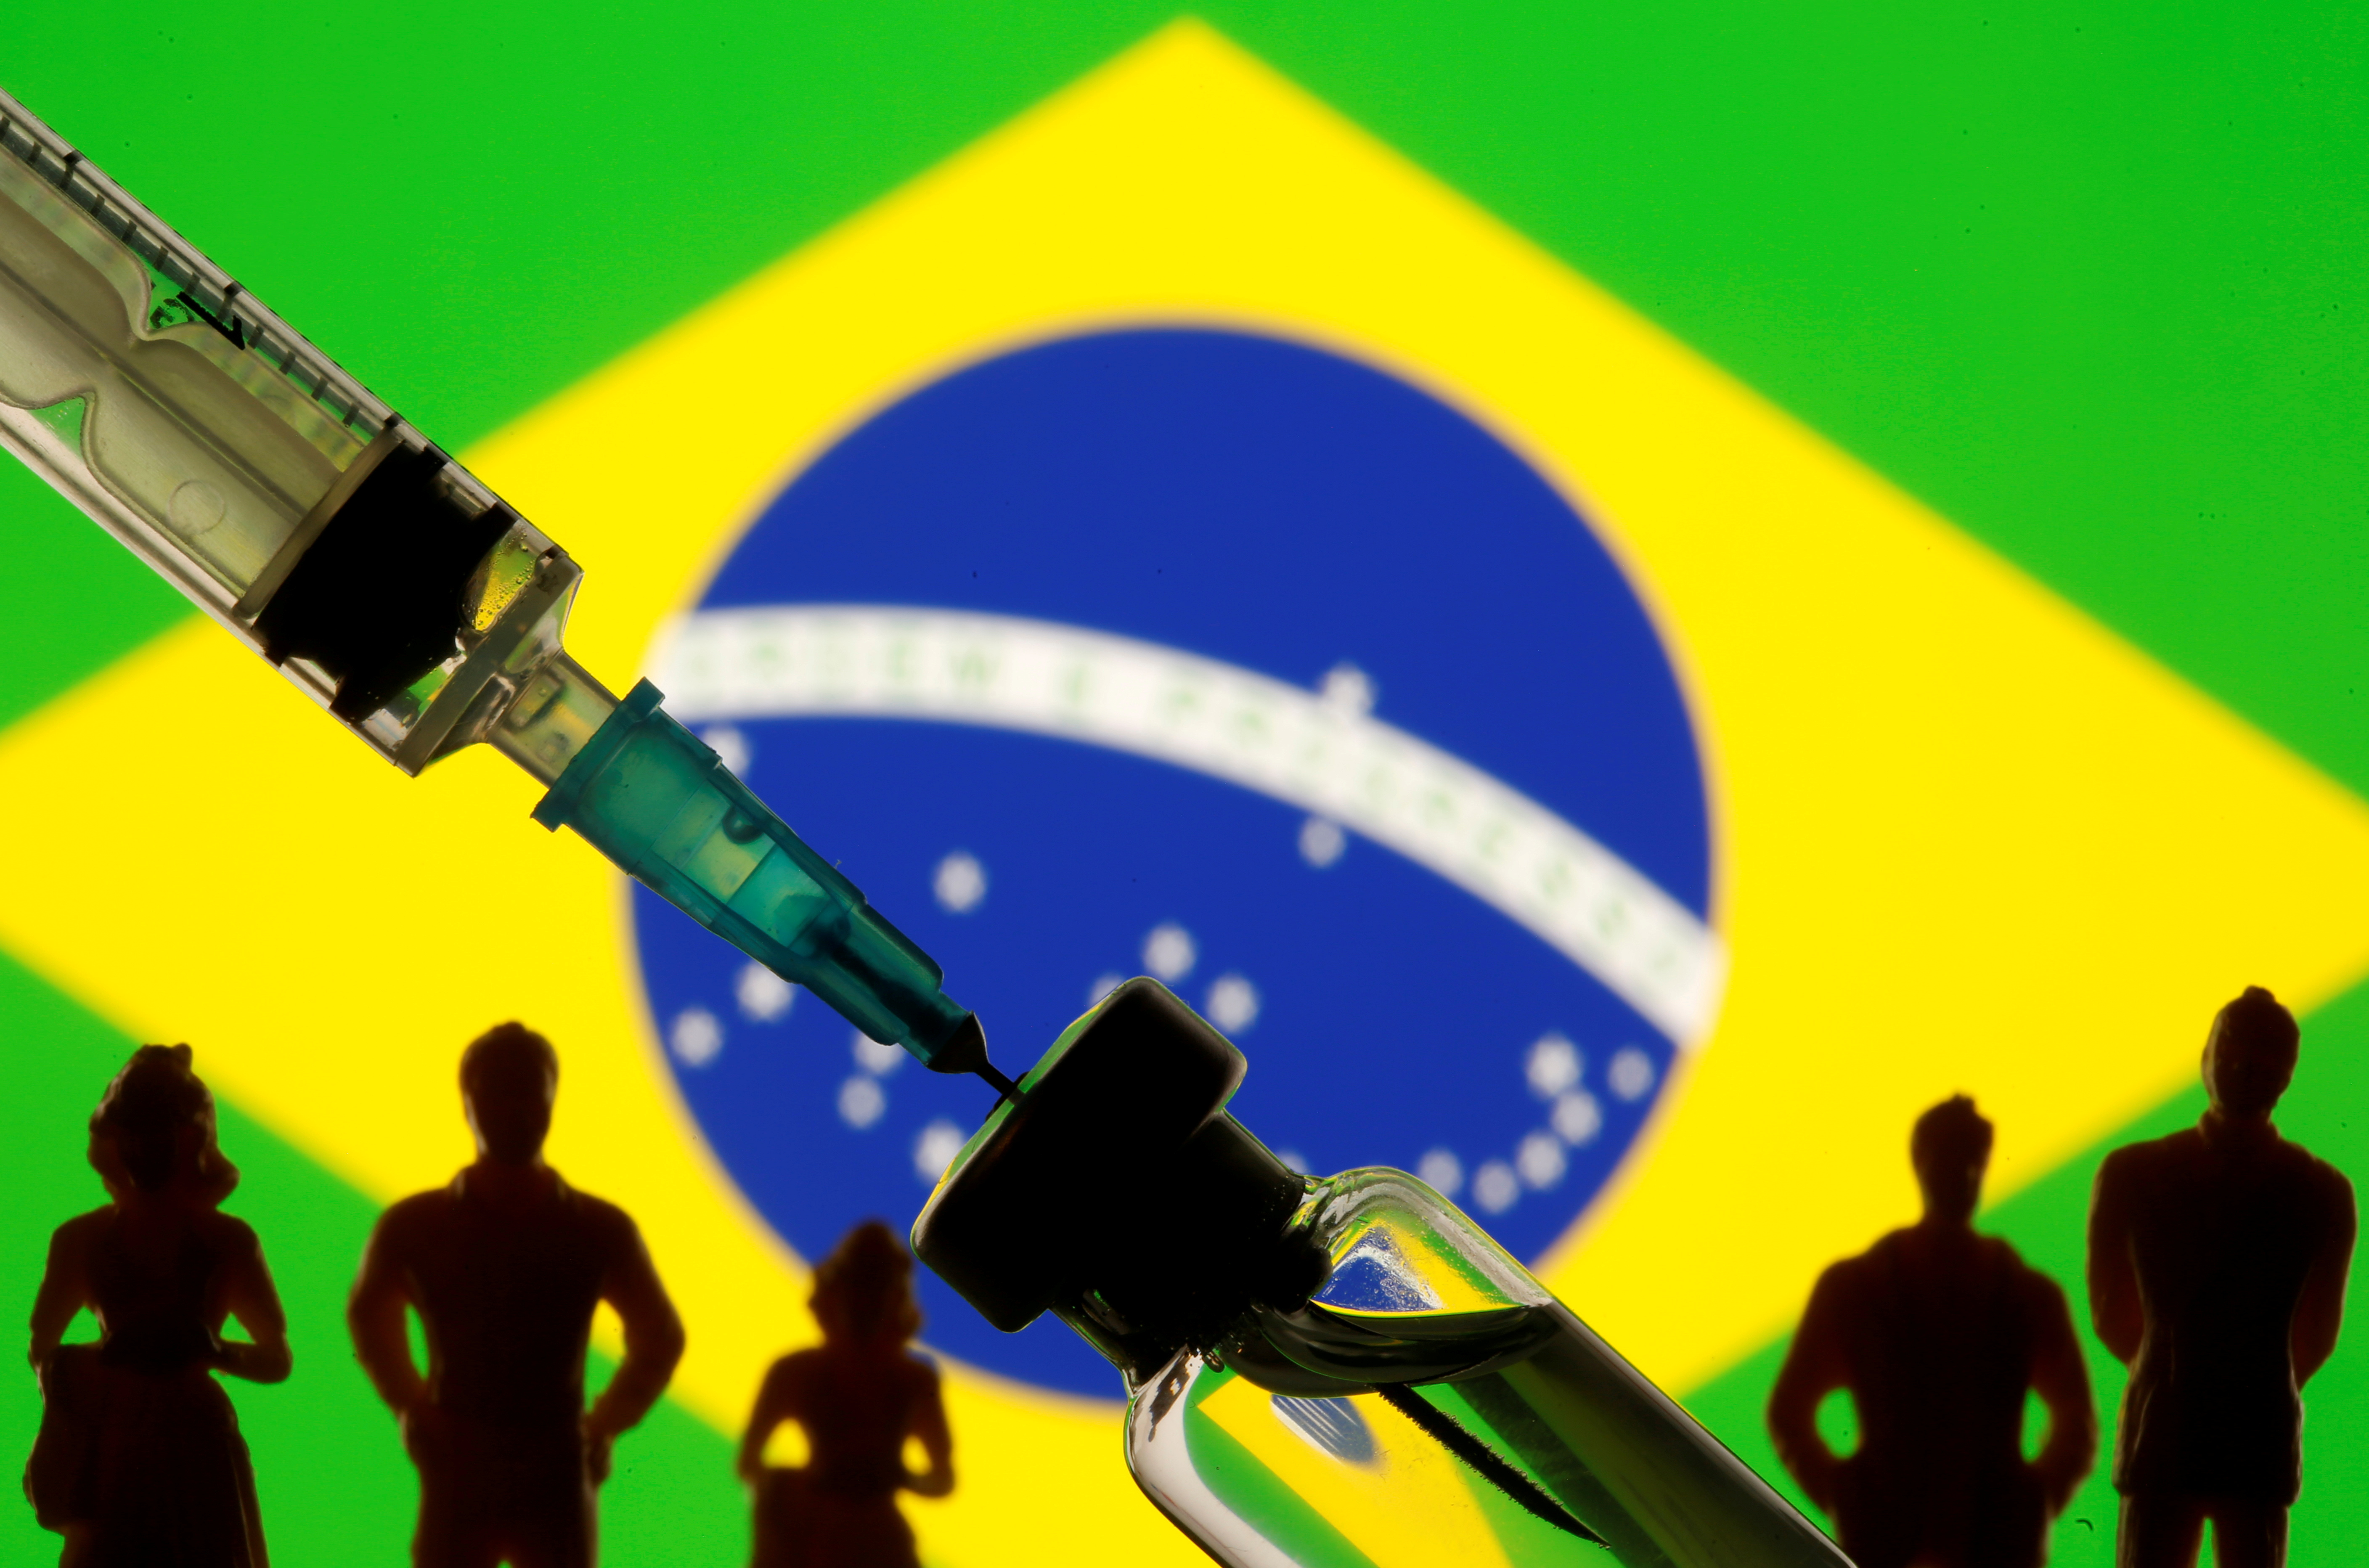 En Brasil se detectaron 2 variantes más contagiosas - REUTERS/Dado Ruvic/Illustration/File Photo